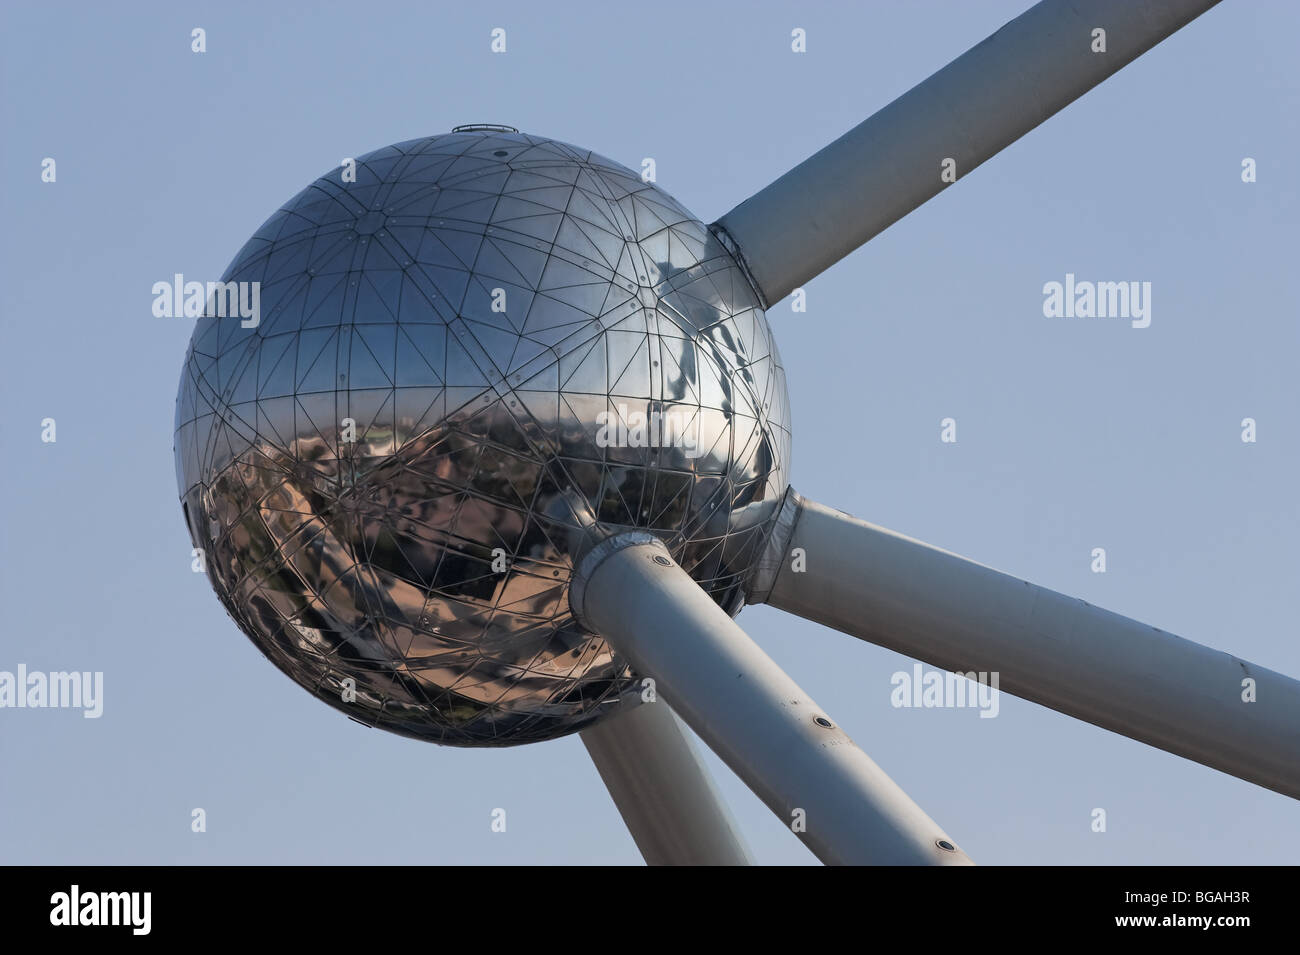 Bâtiment bruxelles belgique Bruxelles Atomium art Banque D'Images